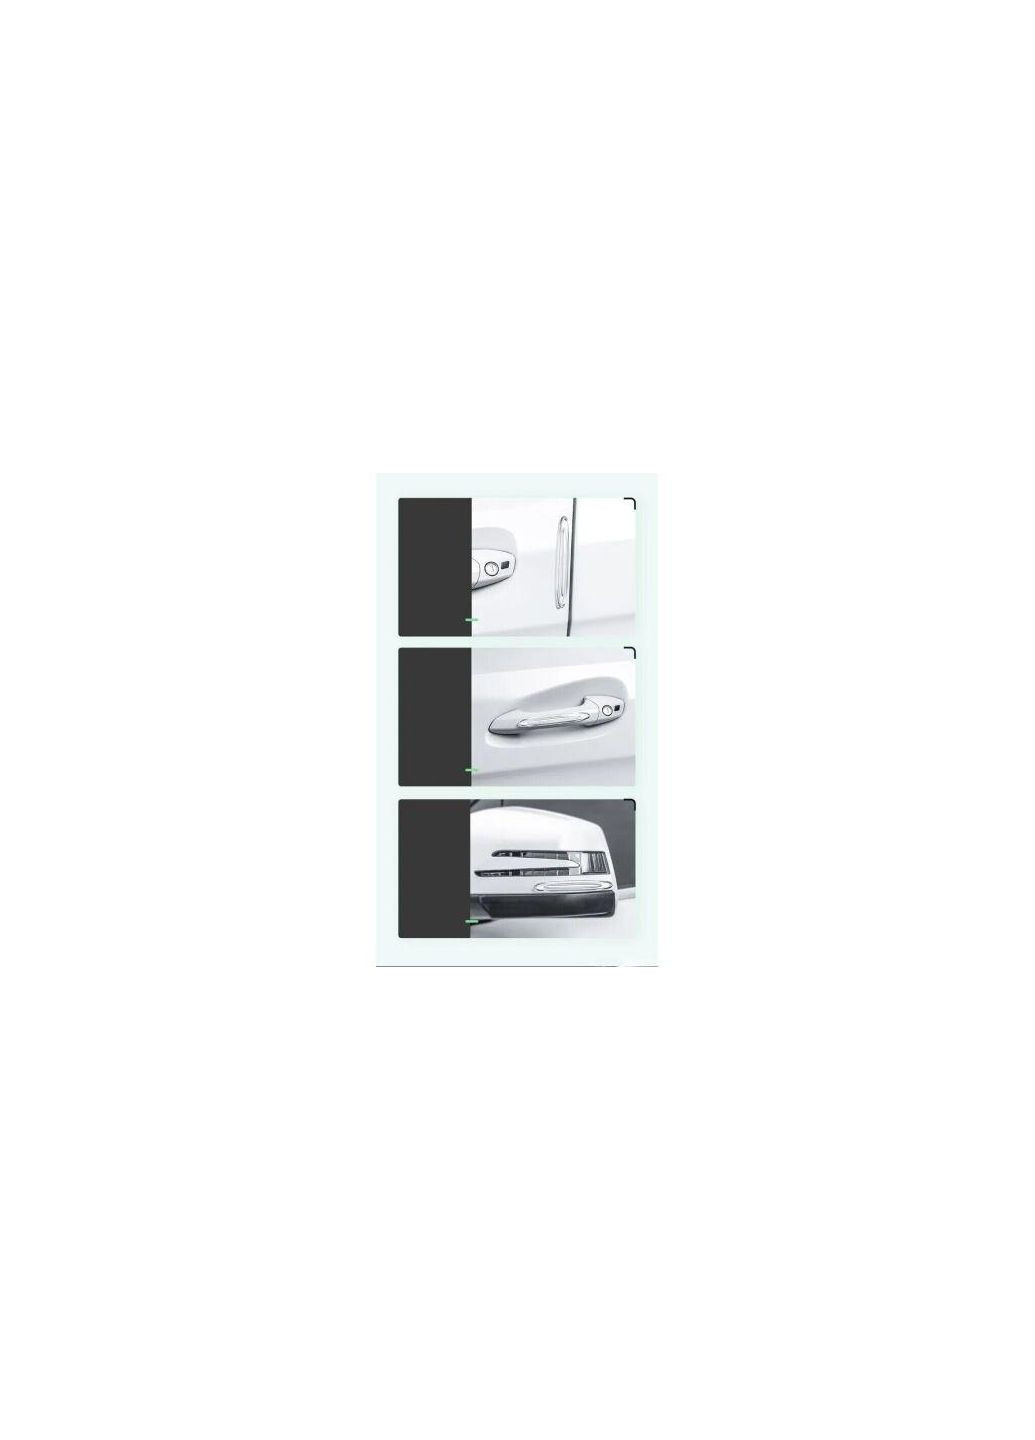 Коплект накладок для защиты дверей авто Airbag Bumper Strip TPU 4pcs (CRFZTA02) Baseus (279827230)